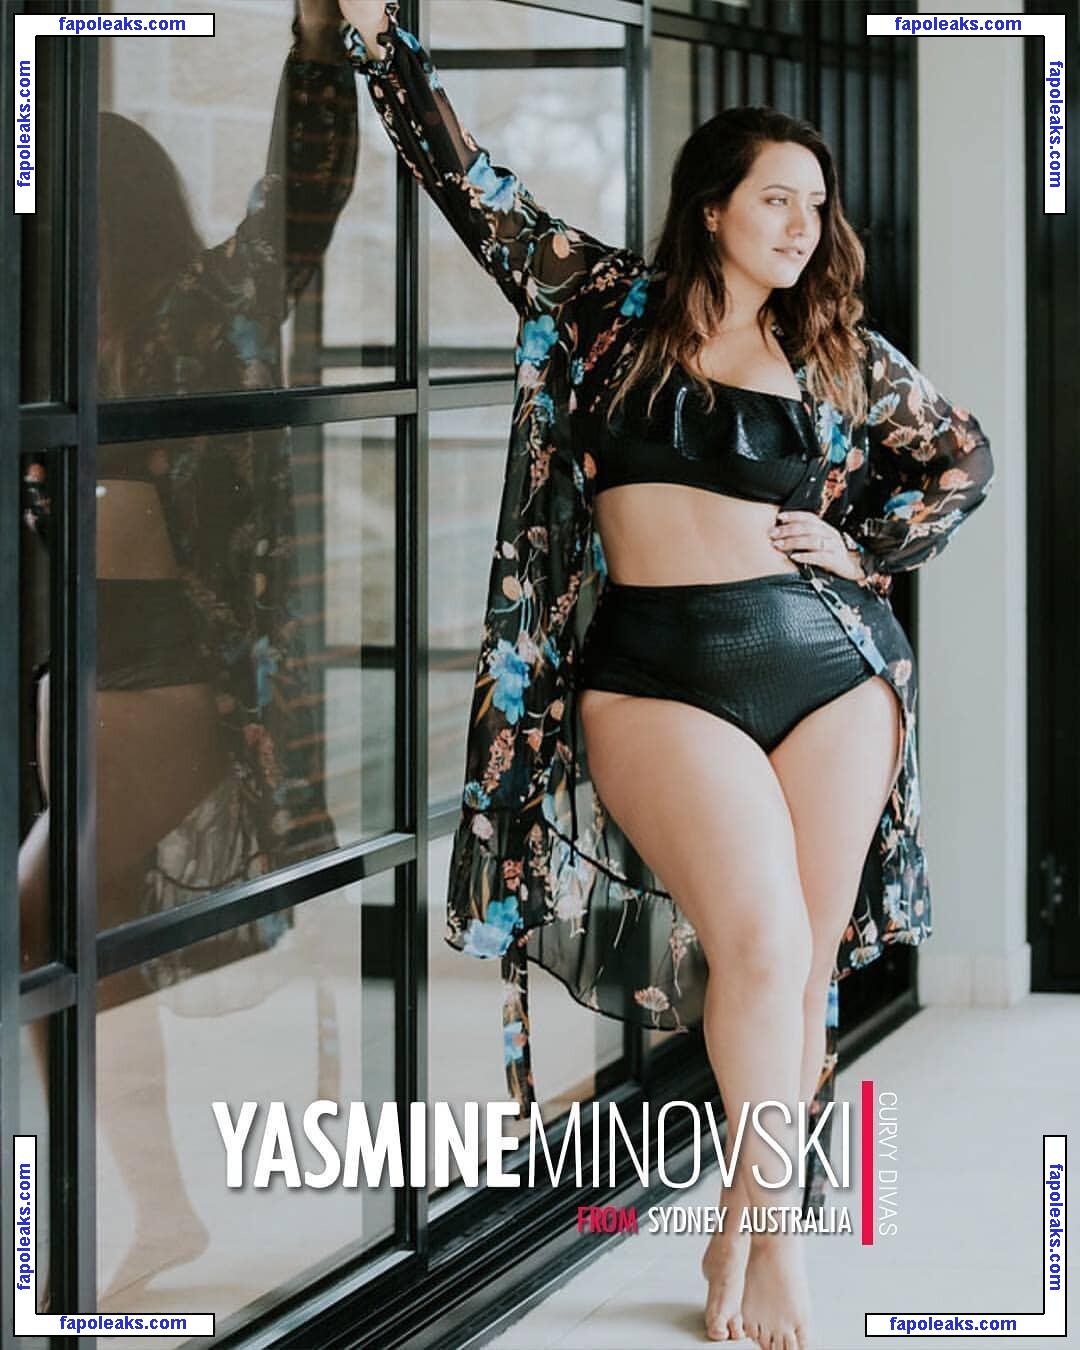 Yasmine MInovski / yasmine_minovski nude photo #0077 from OnlyFans